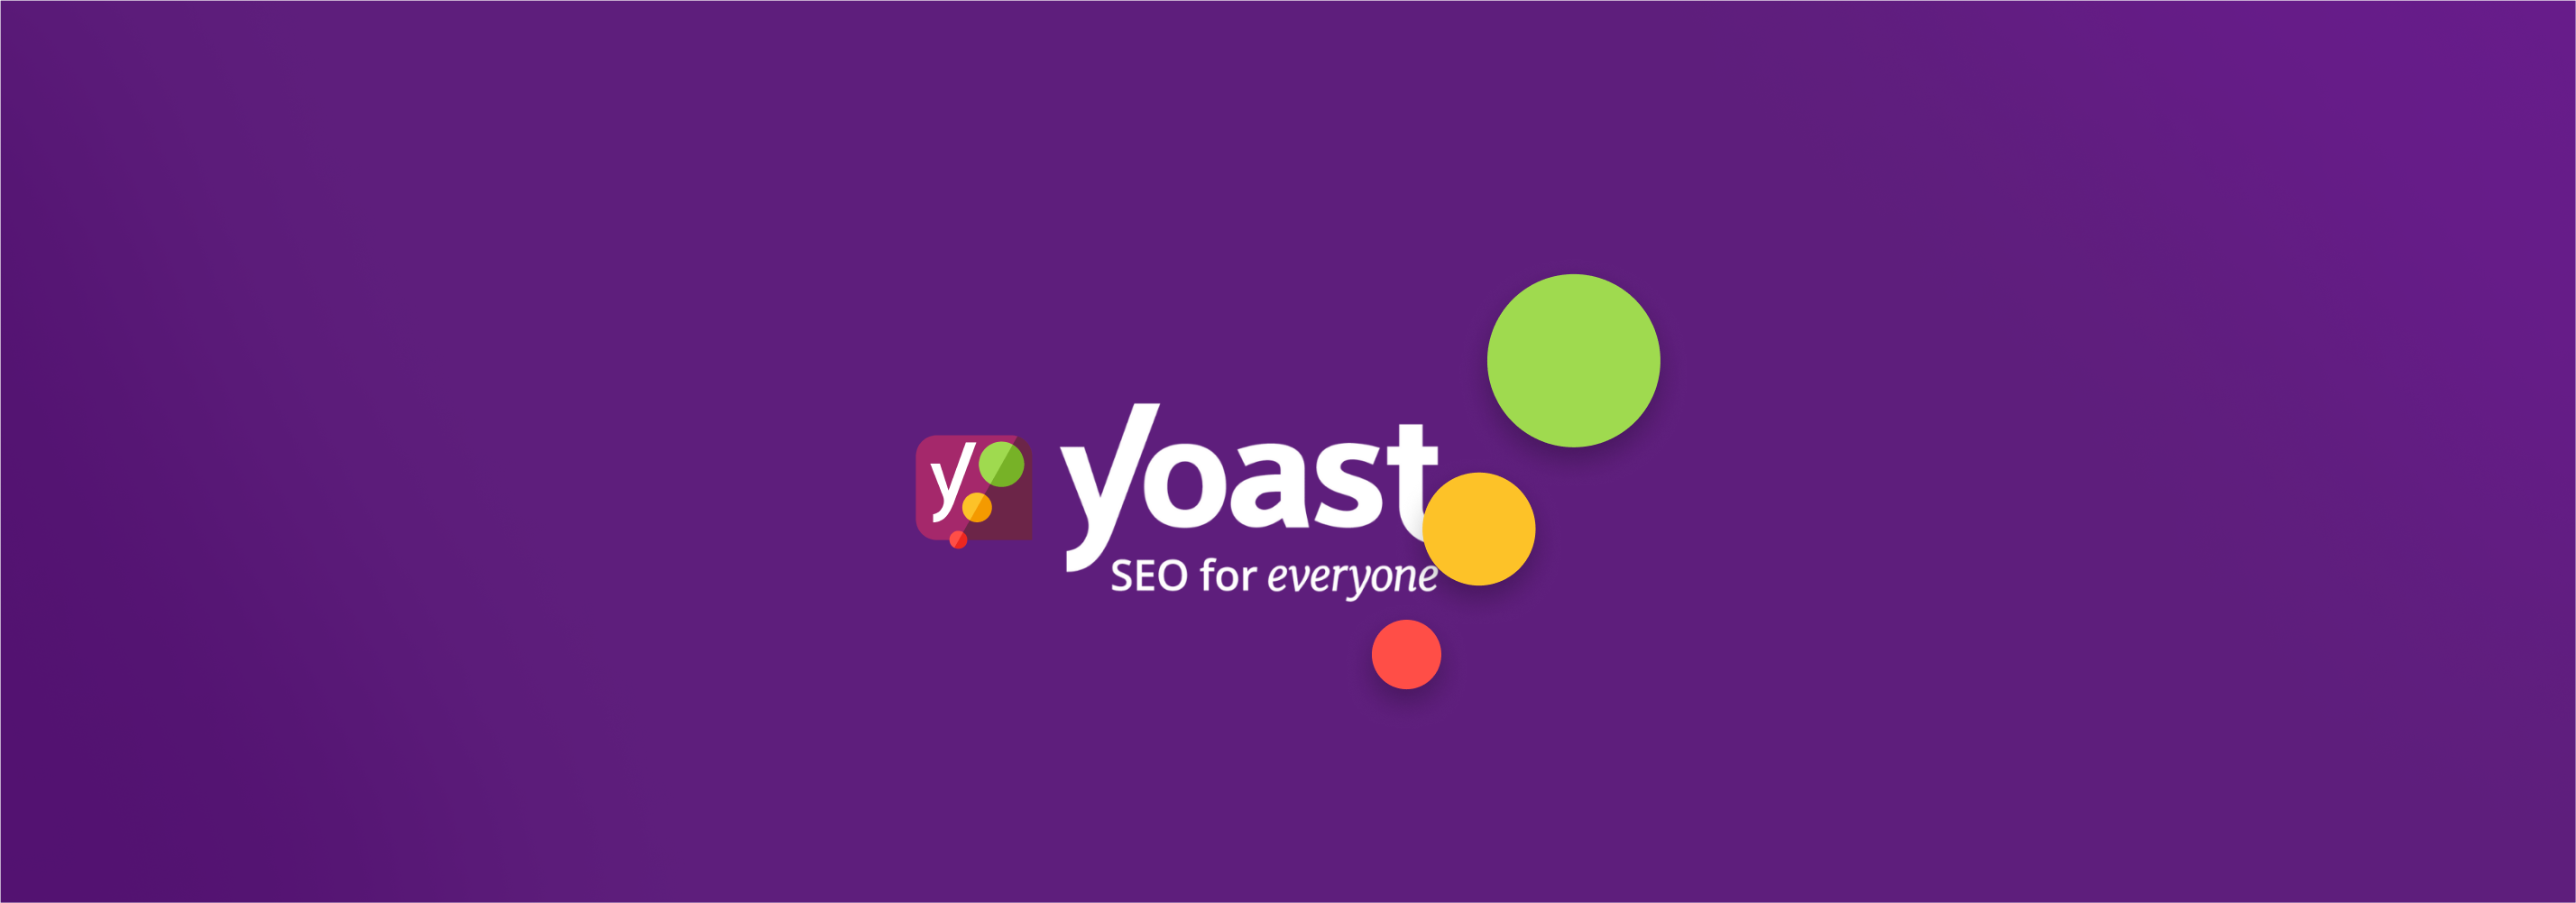 plugin yoast seo